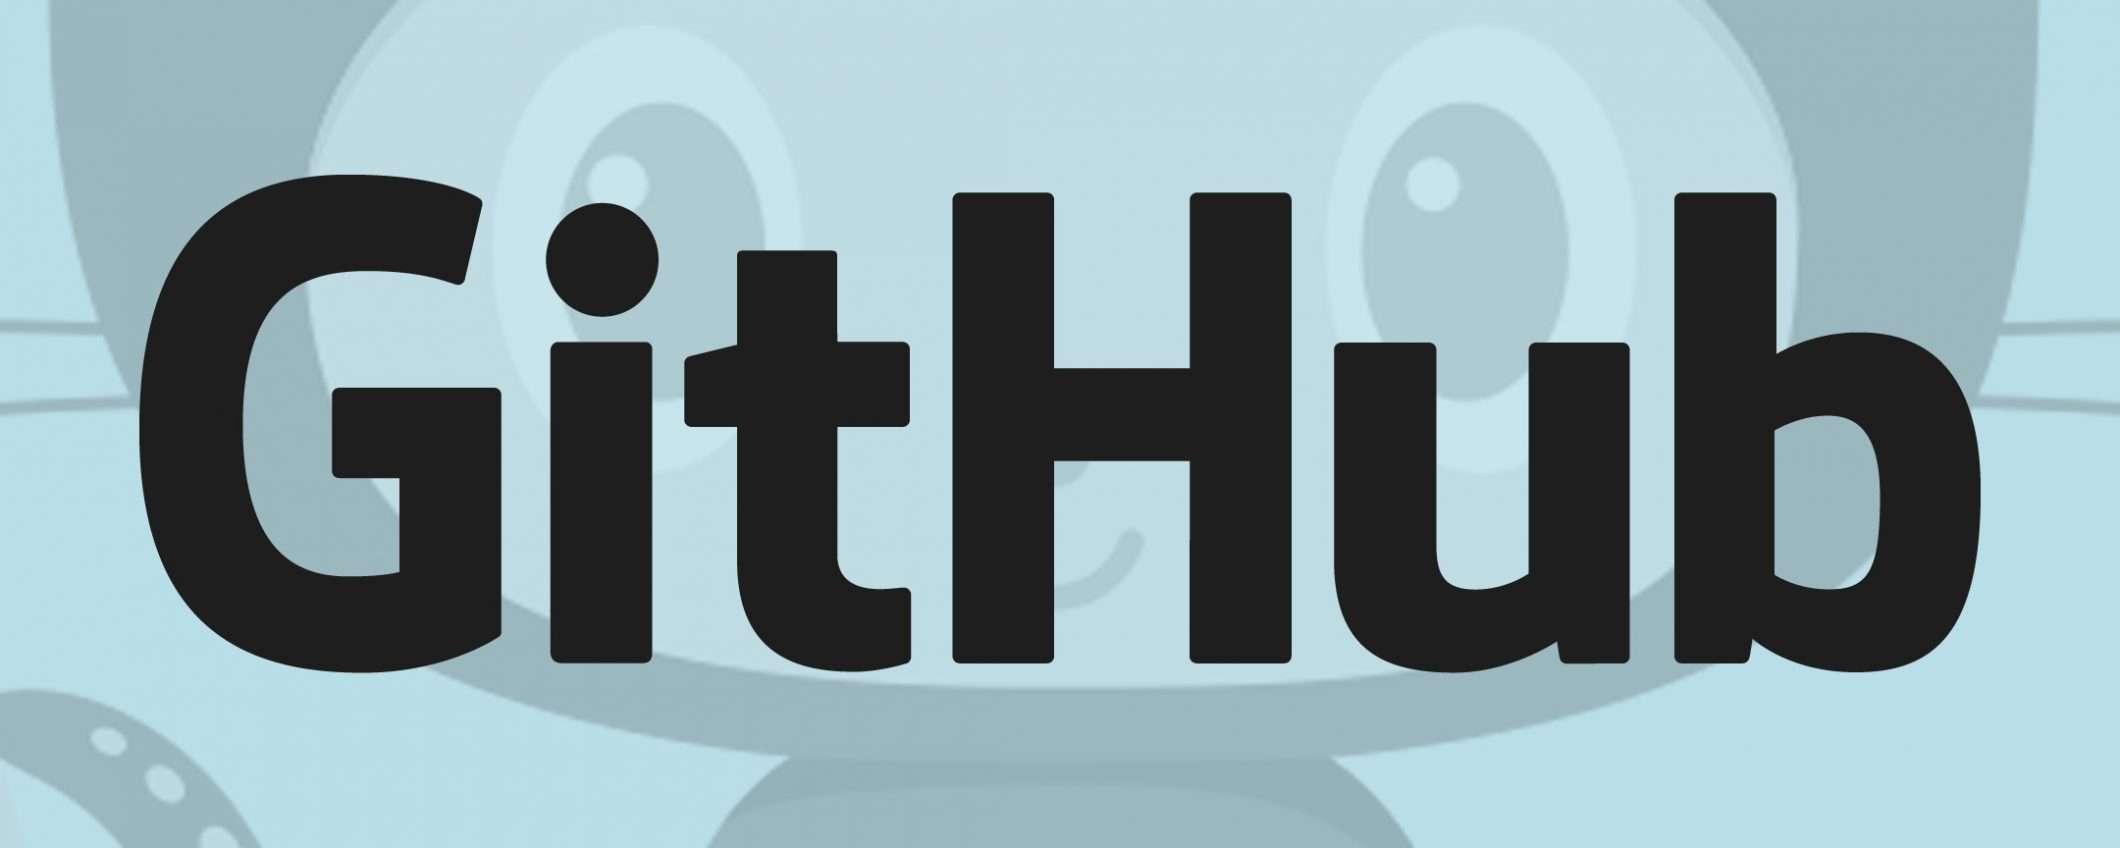 GitHub: la formula Team ora costa meno della metà